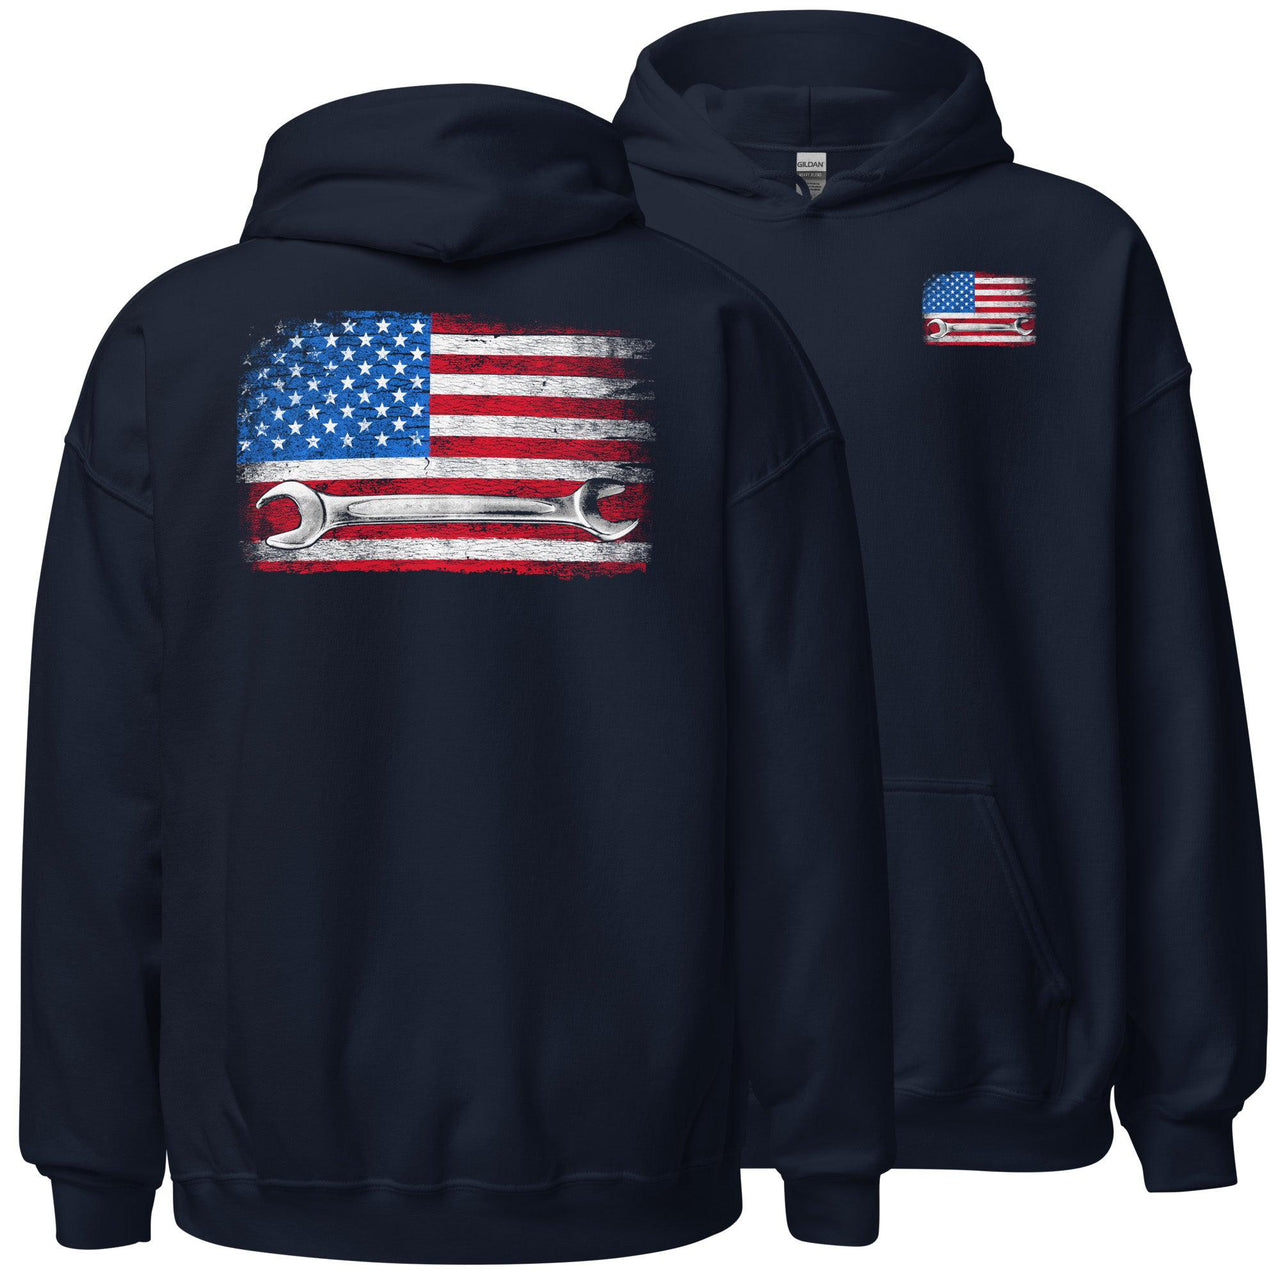 American Flag Mechanic Hoodie Sweatshirt in navy